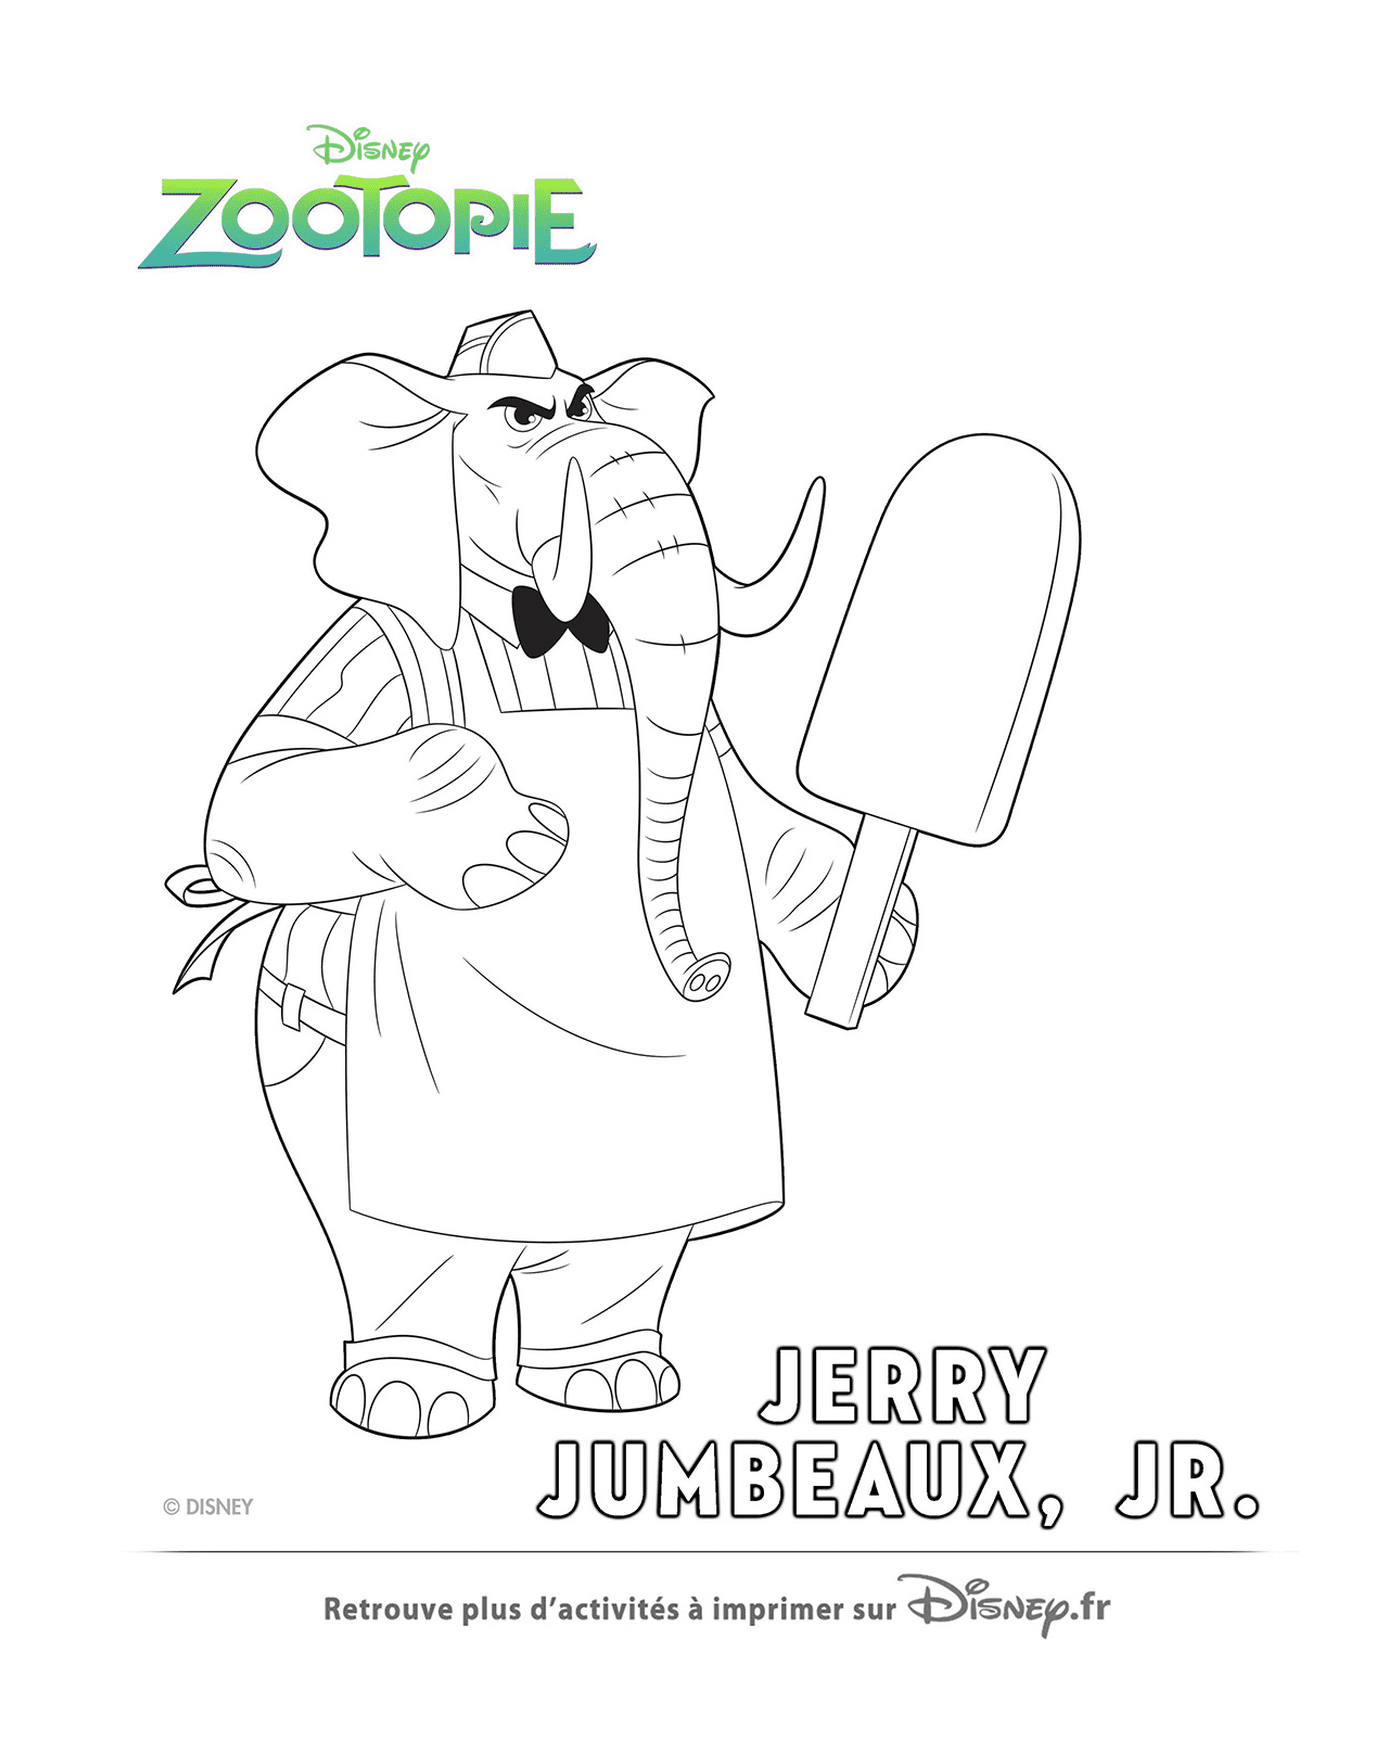  Jerry, Zootopie's ice cream salesman 